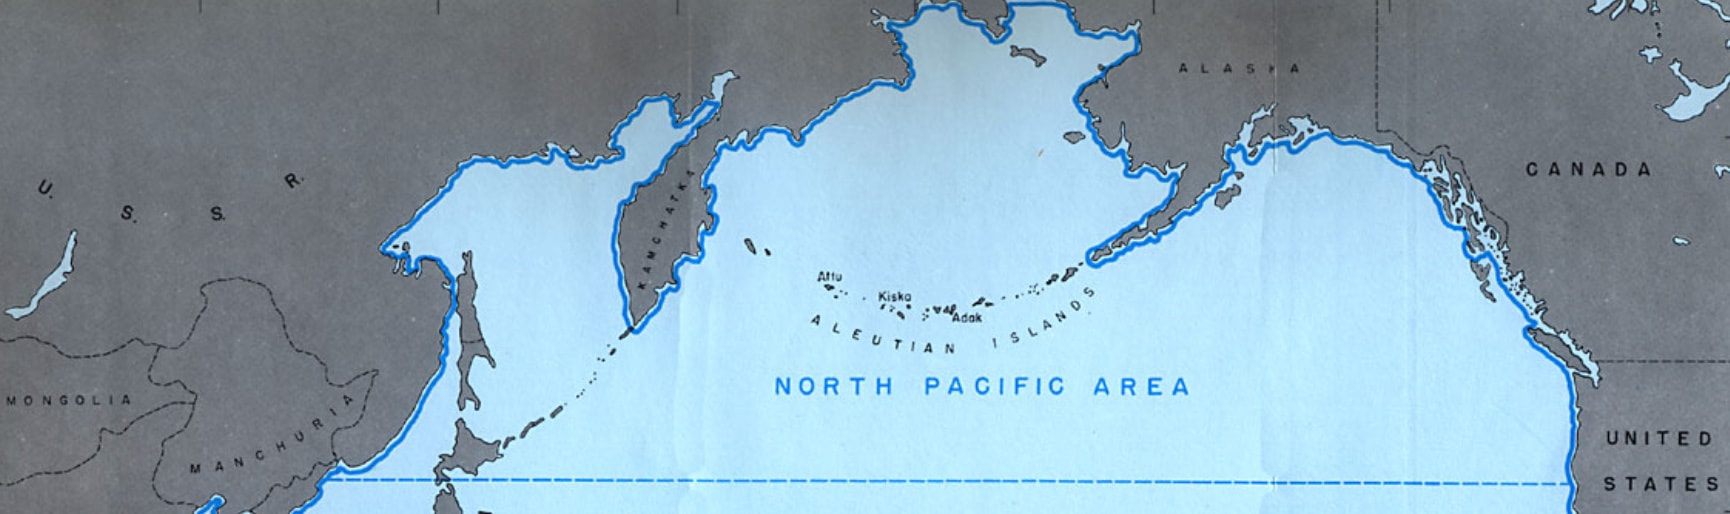 The North Pacific Area